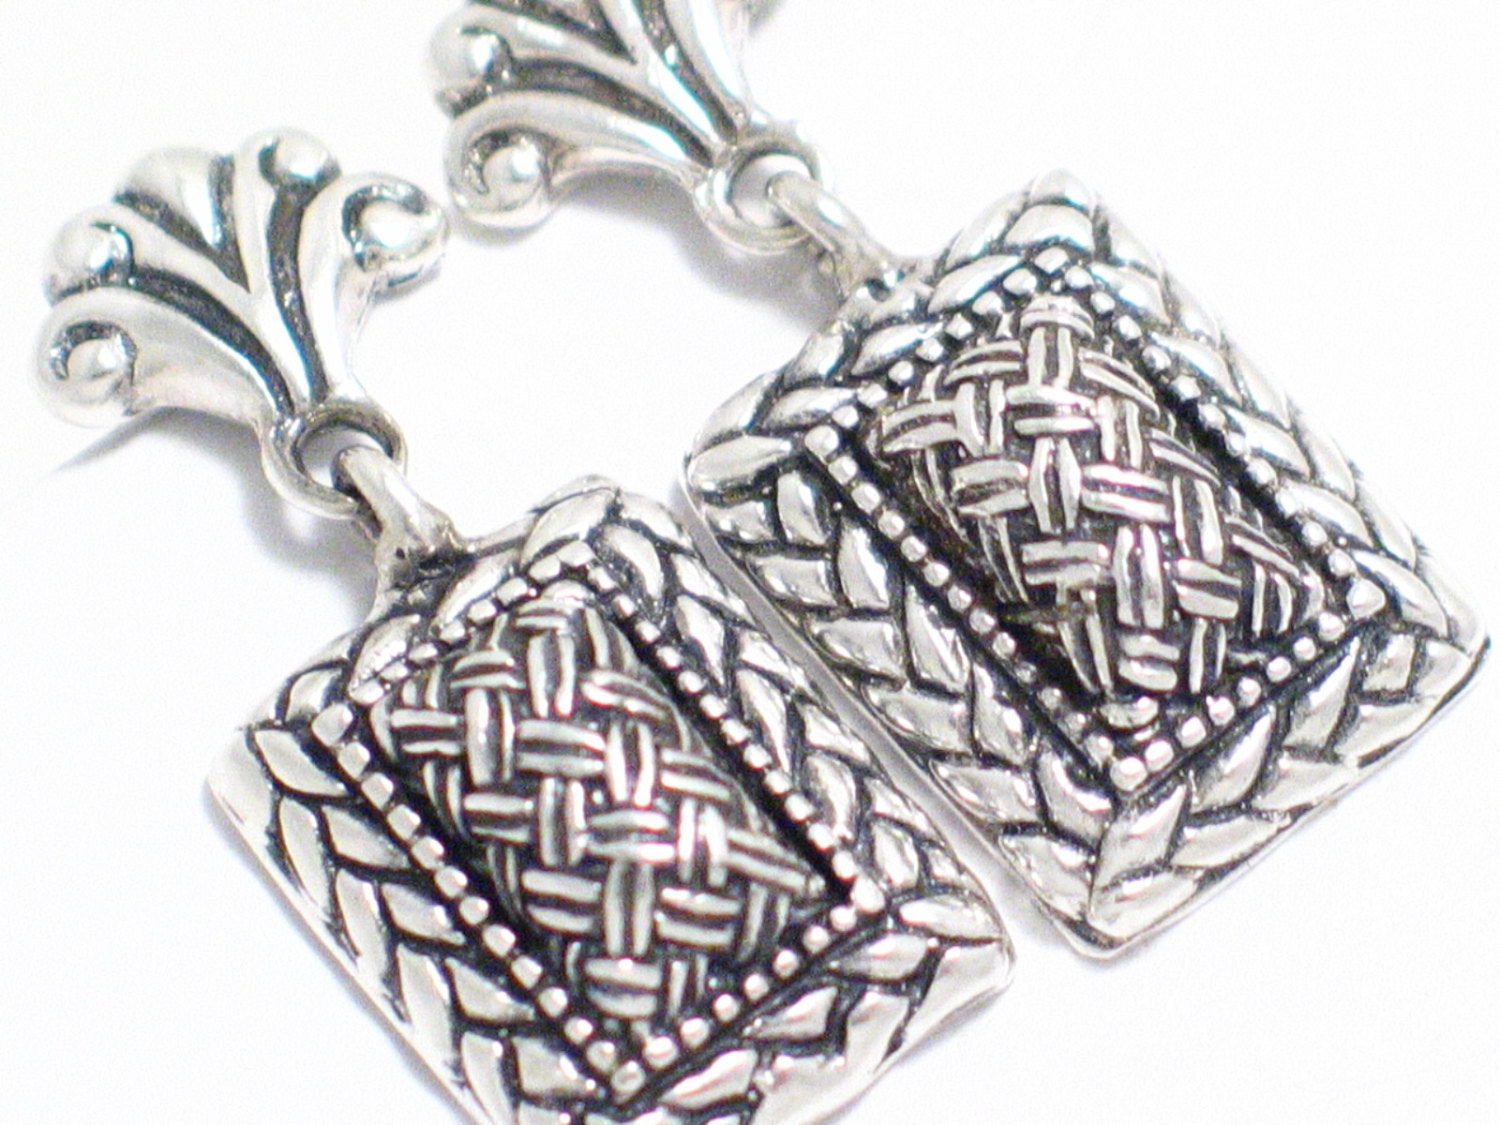 Dangle Earrings | Sterling Silver Woven Basket Design Dangle Earrings | Silver Earrings